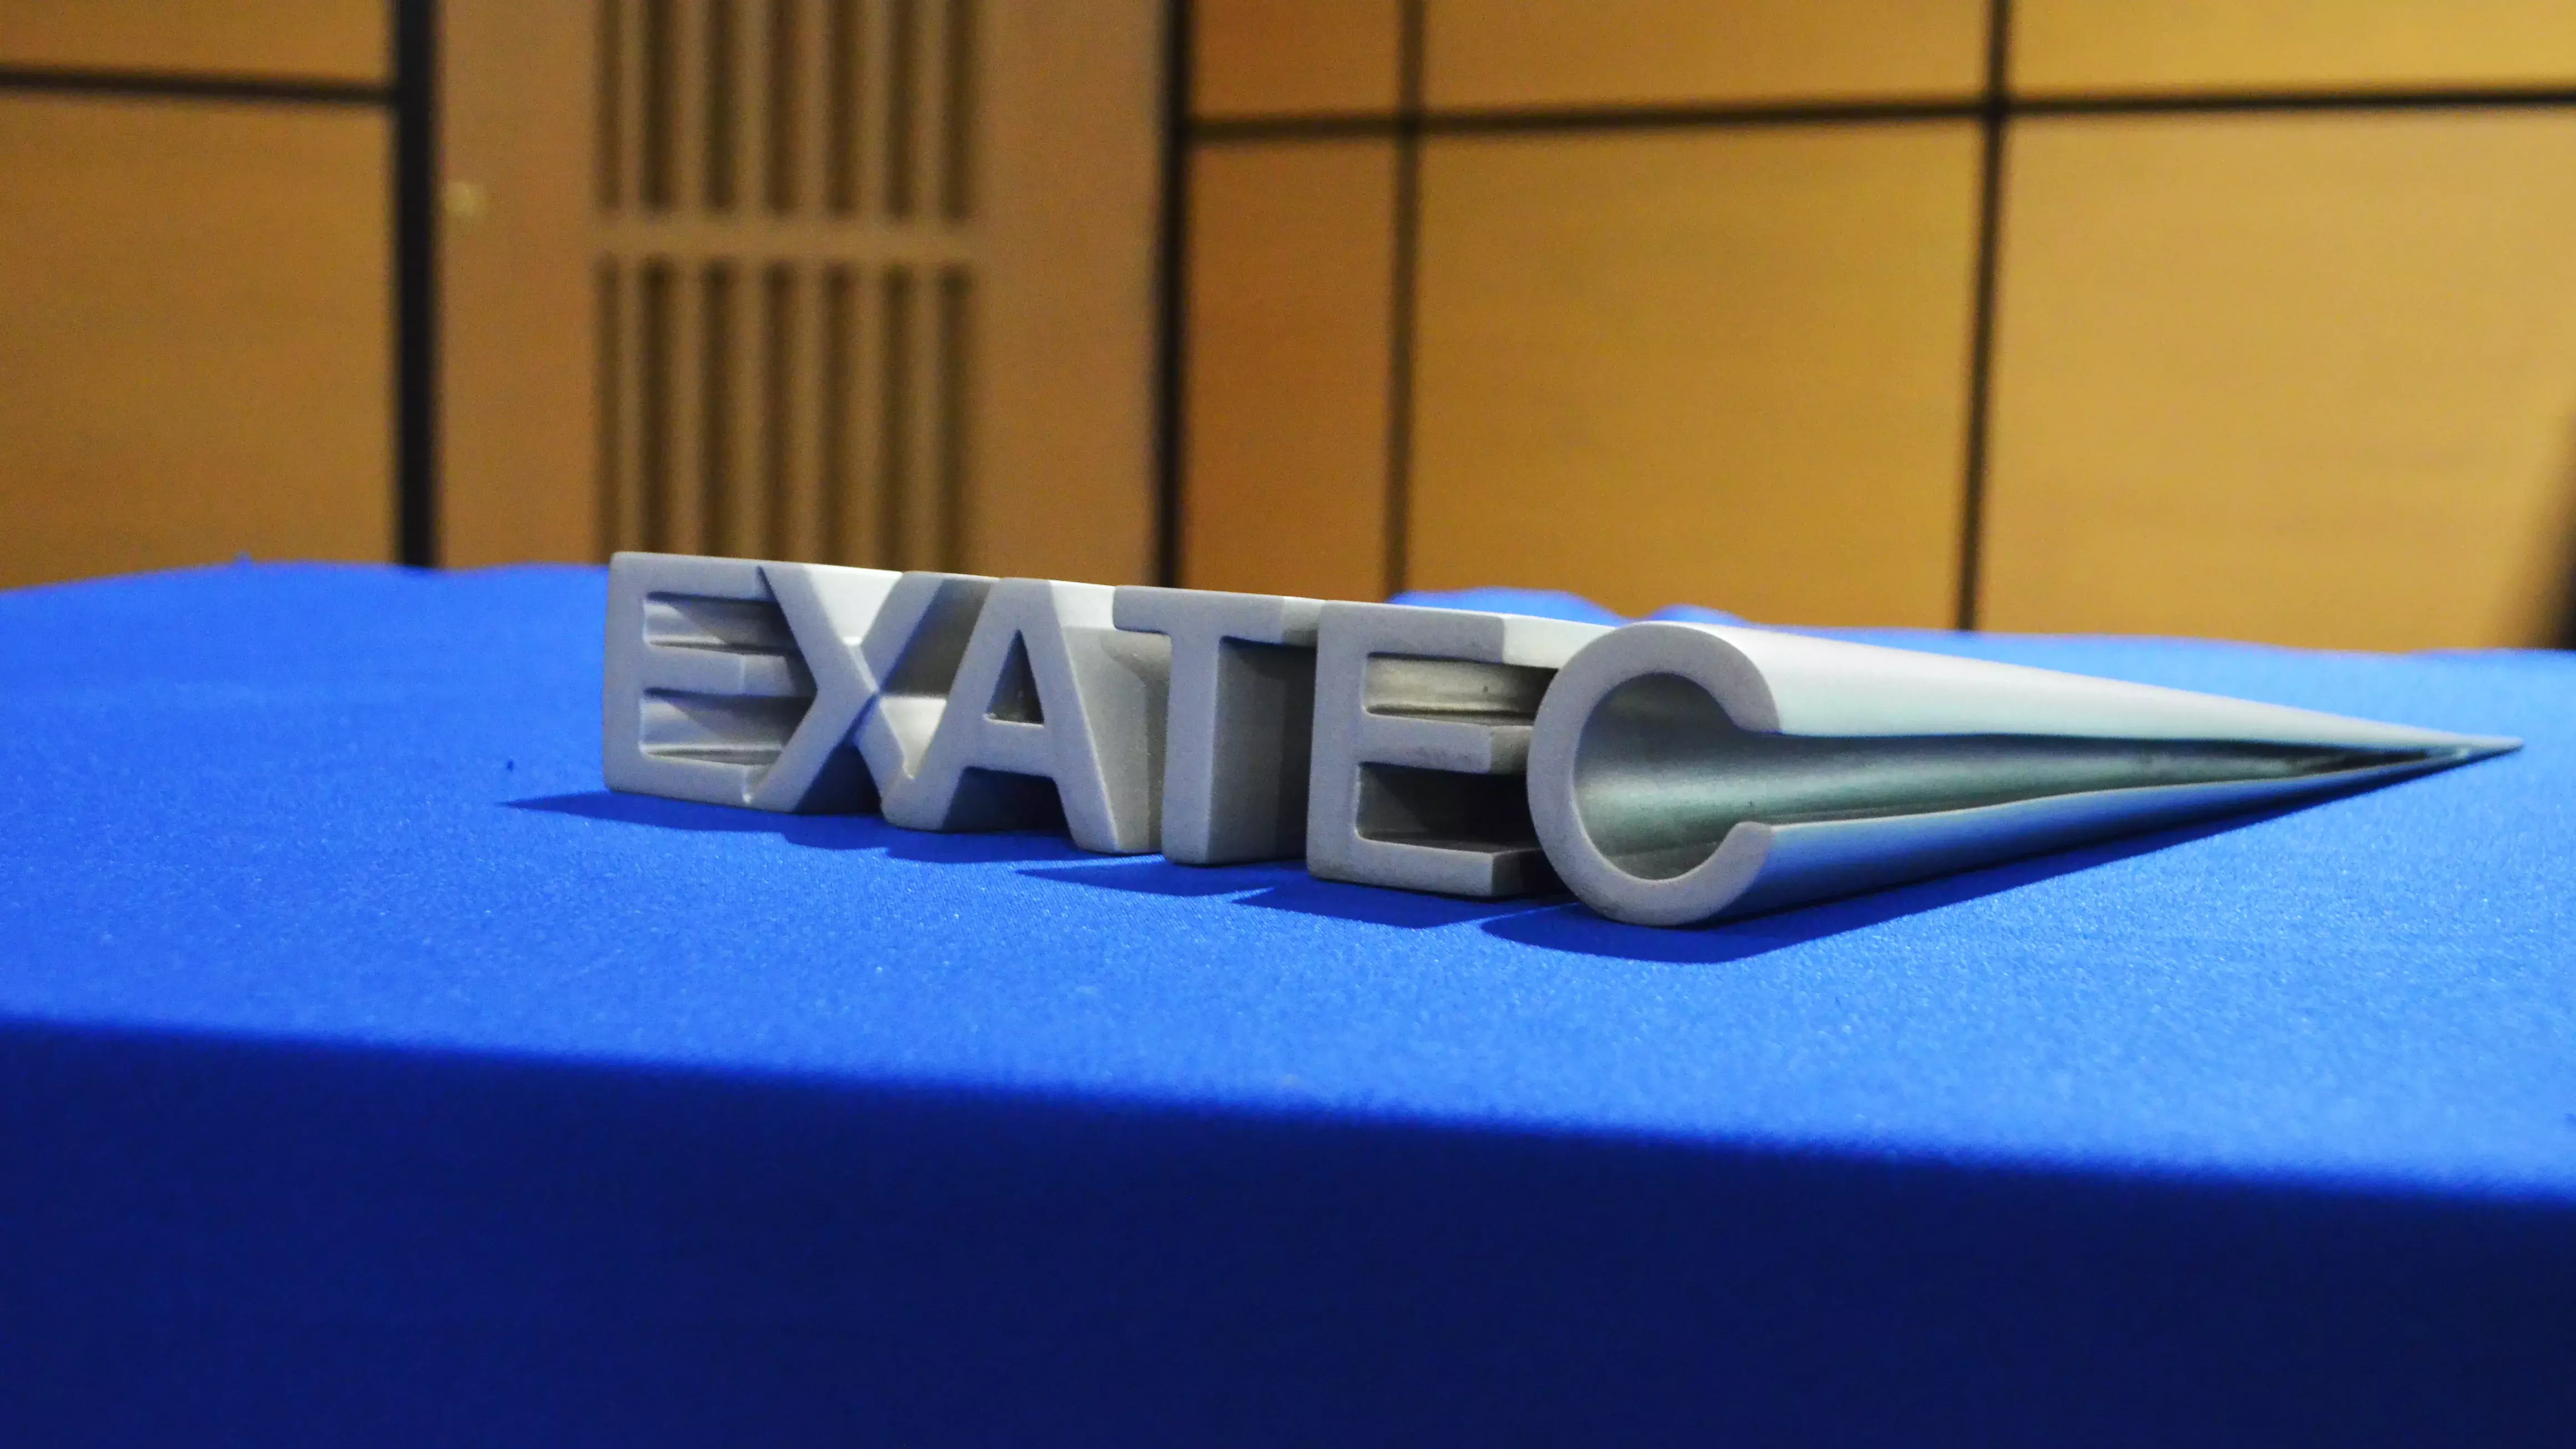 La escultura EXATEC conmemorativa del evento